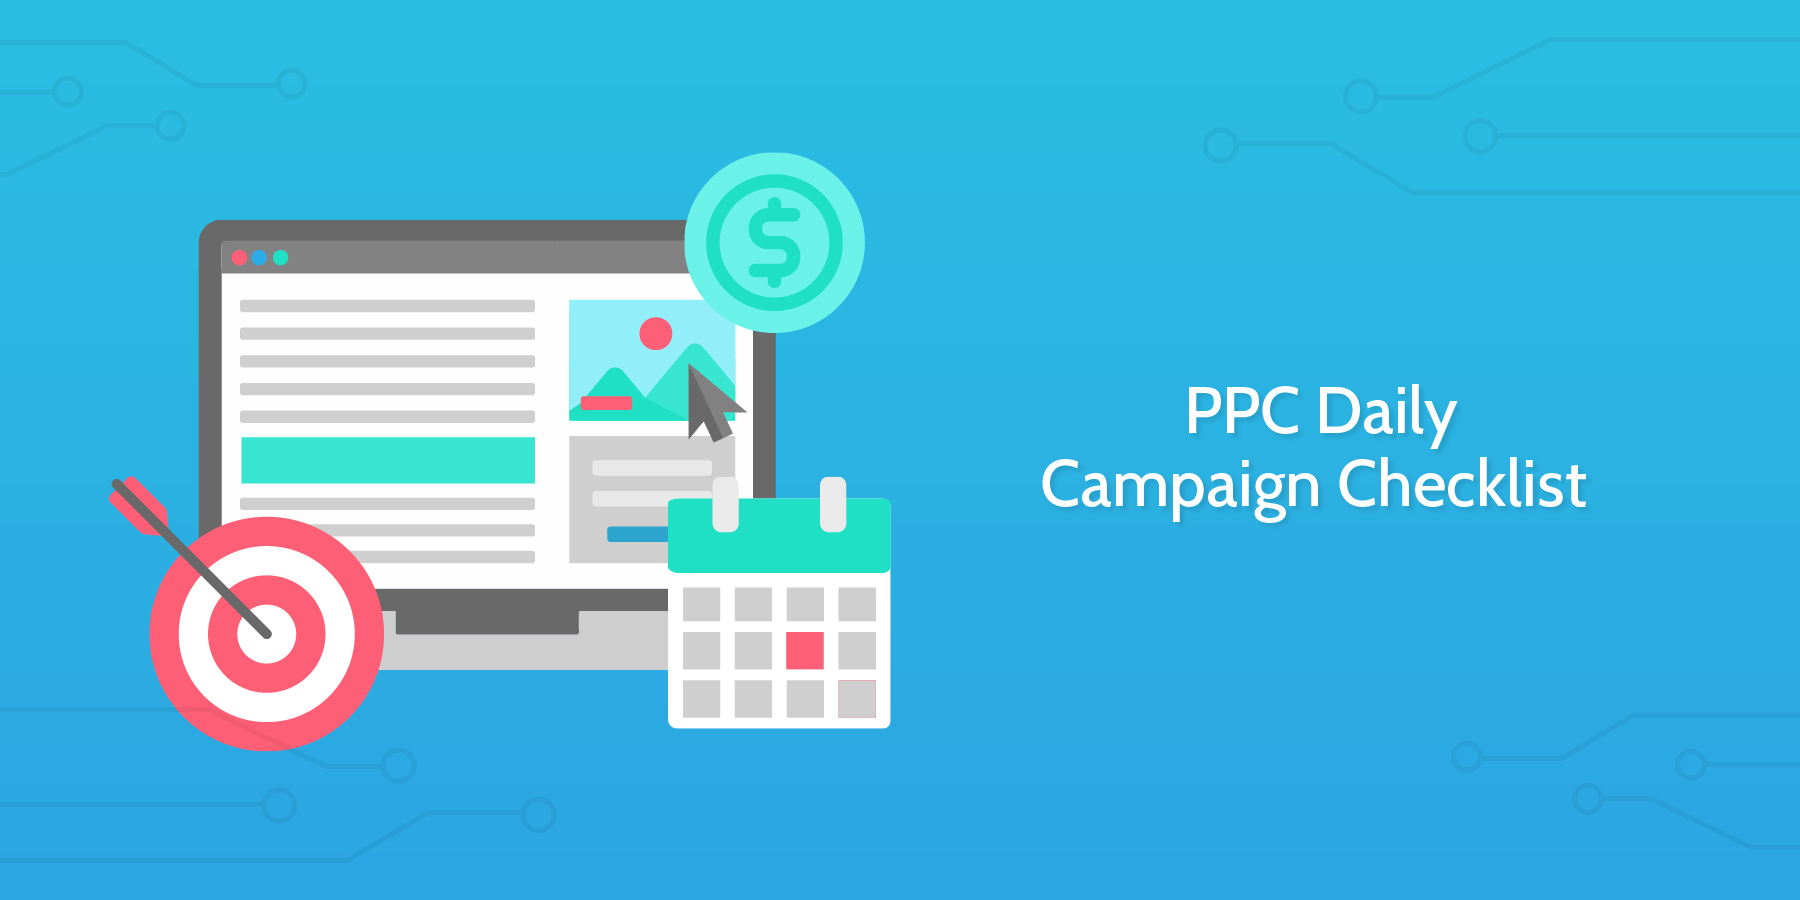 PPC Daily Campaign Checklist